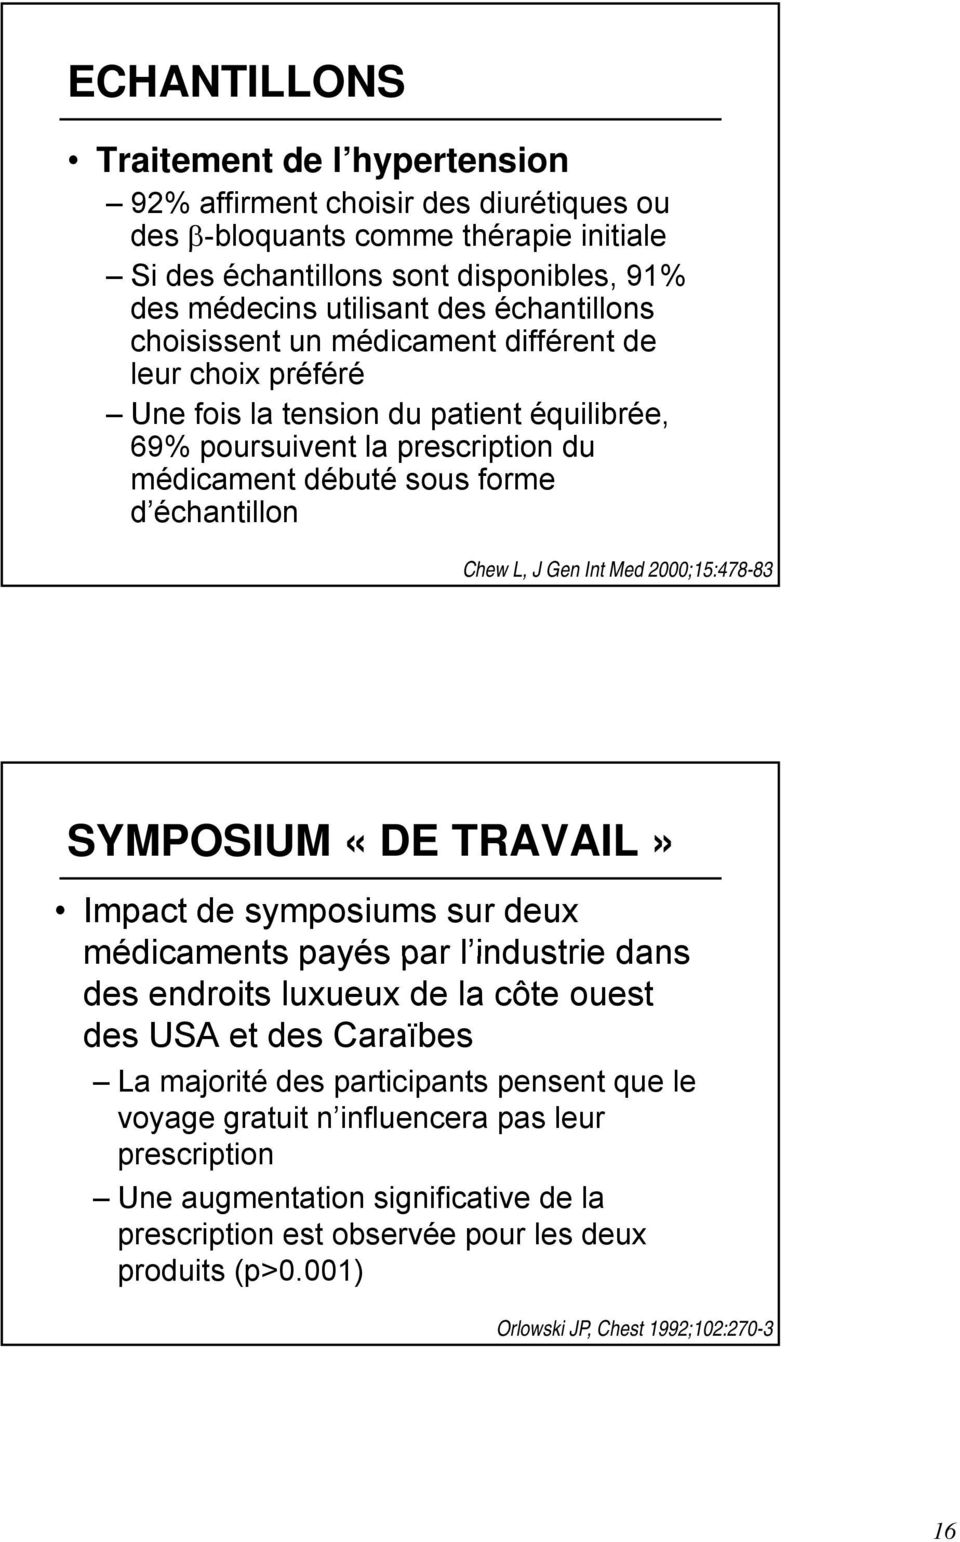 J Gen Int Med 2000;15:478-83 SYMPOSIUM «DE TRAVAIL» Impact de symposiums sur deux médicaments payés par l industrie dans des endroits luxueux de la côte ouest des USA et des Caraïbes La majorité des